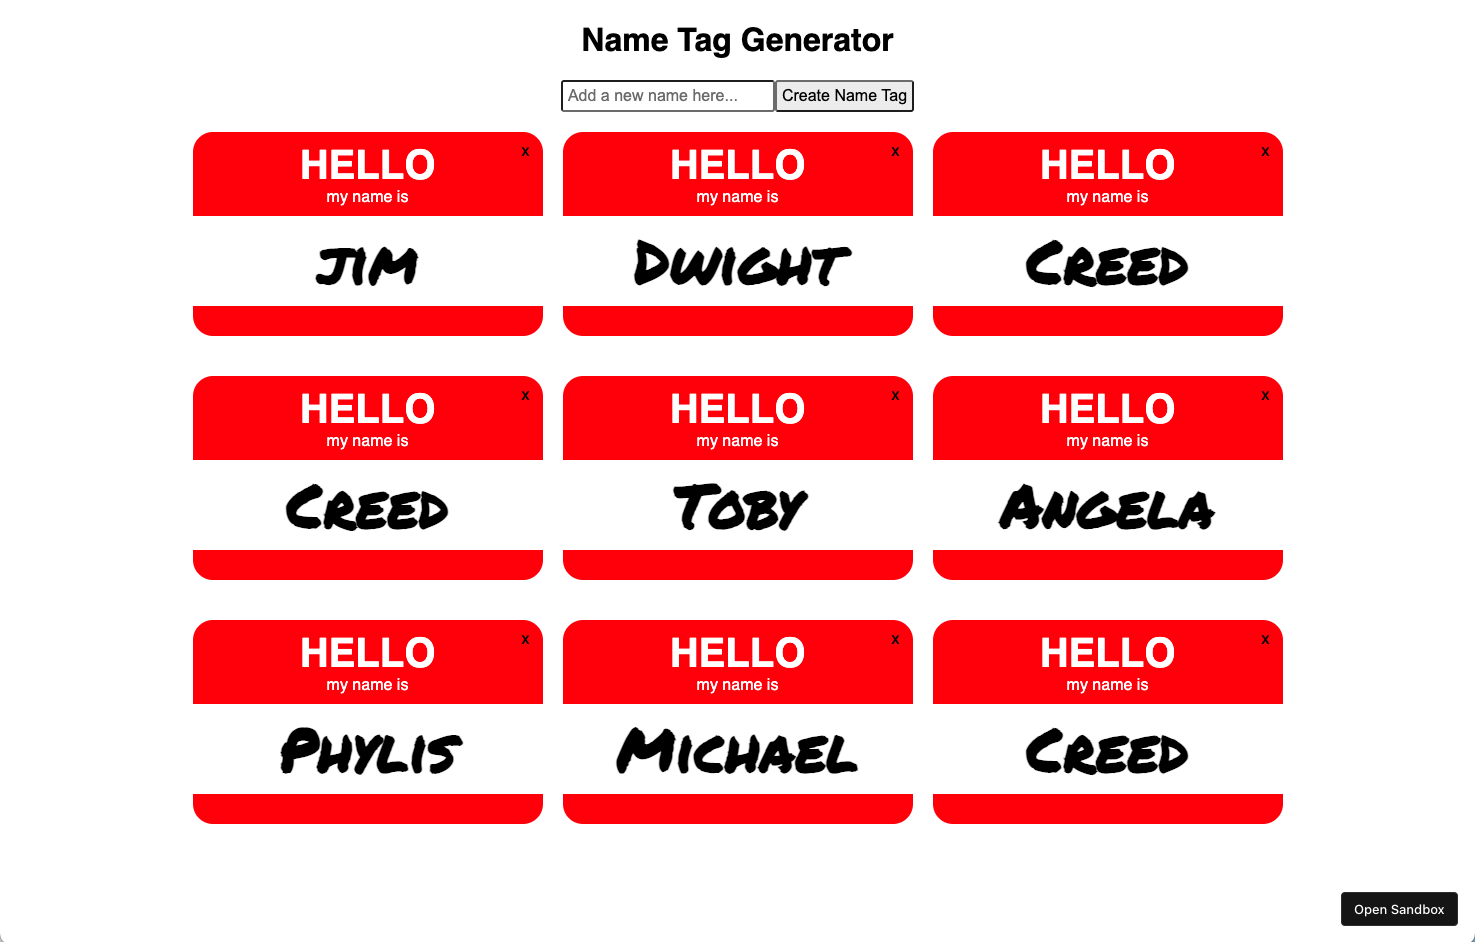 Name Tag Generator